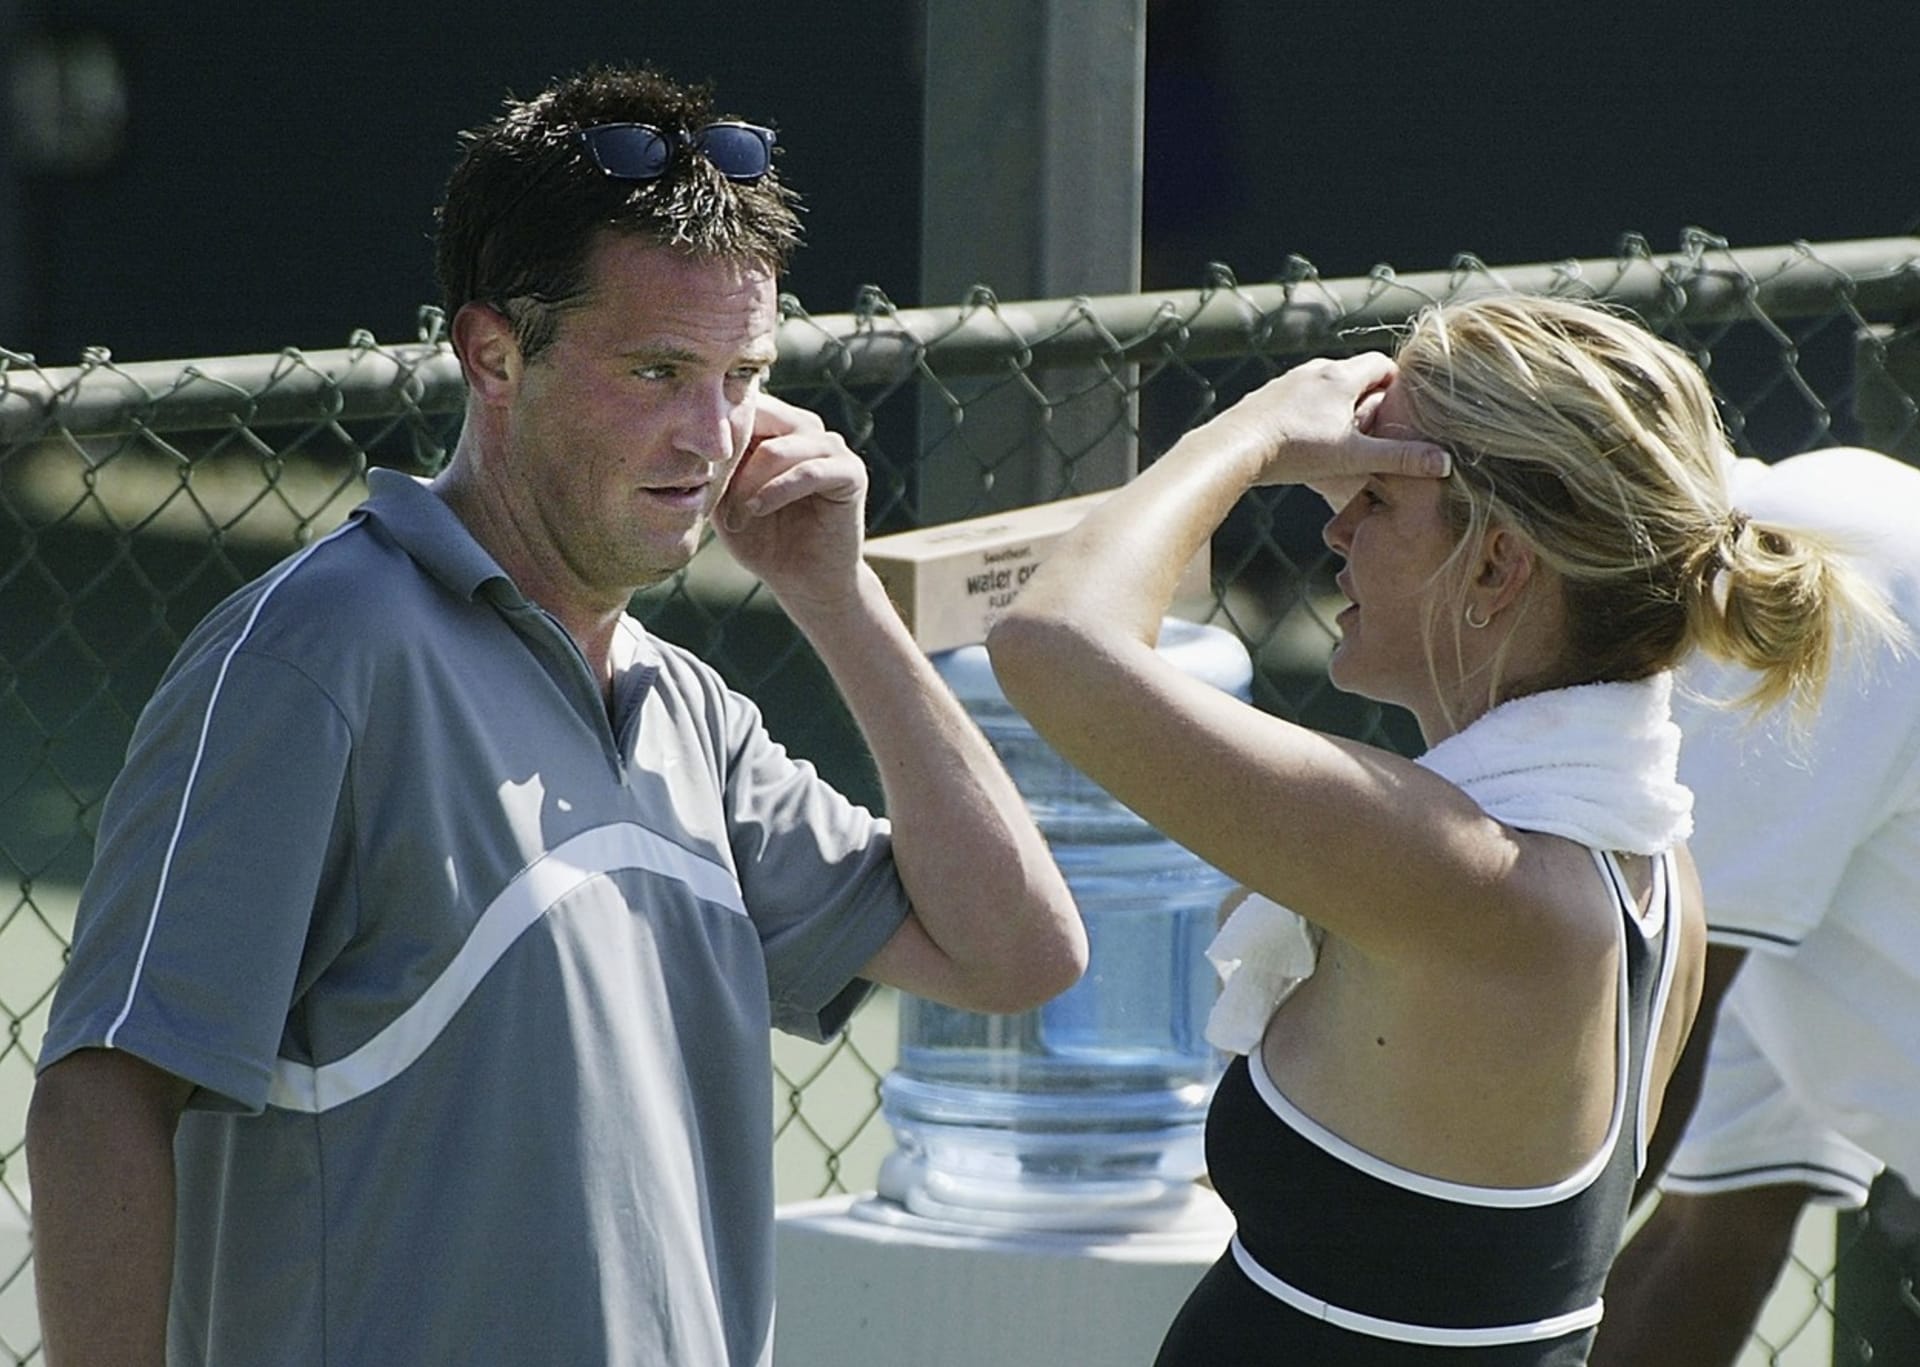 Kromě společné vášně pro tenis je však zřejmě mnohé nespojovalo, a tak vztah v roce 2003 skončil.